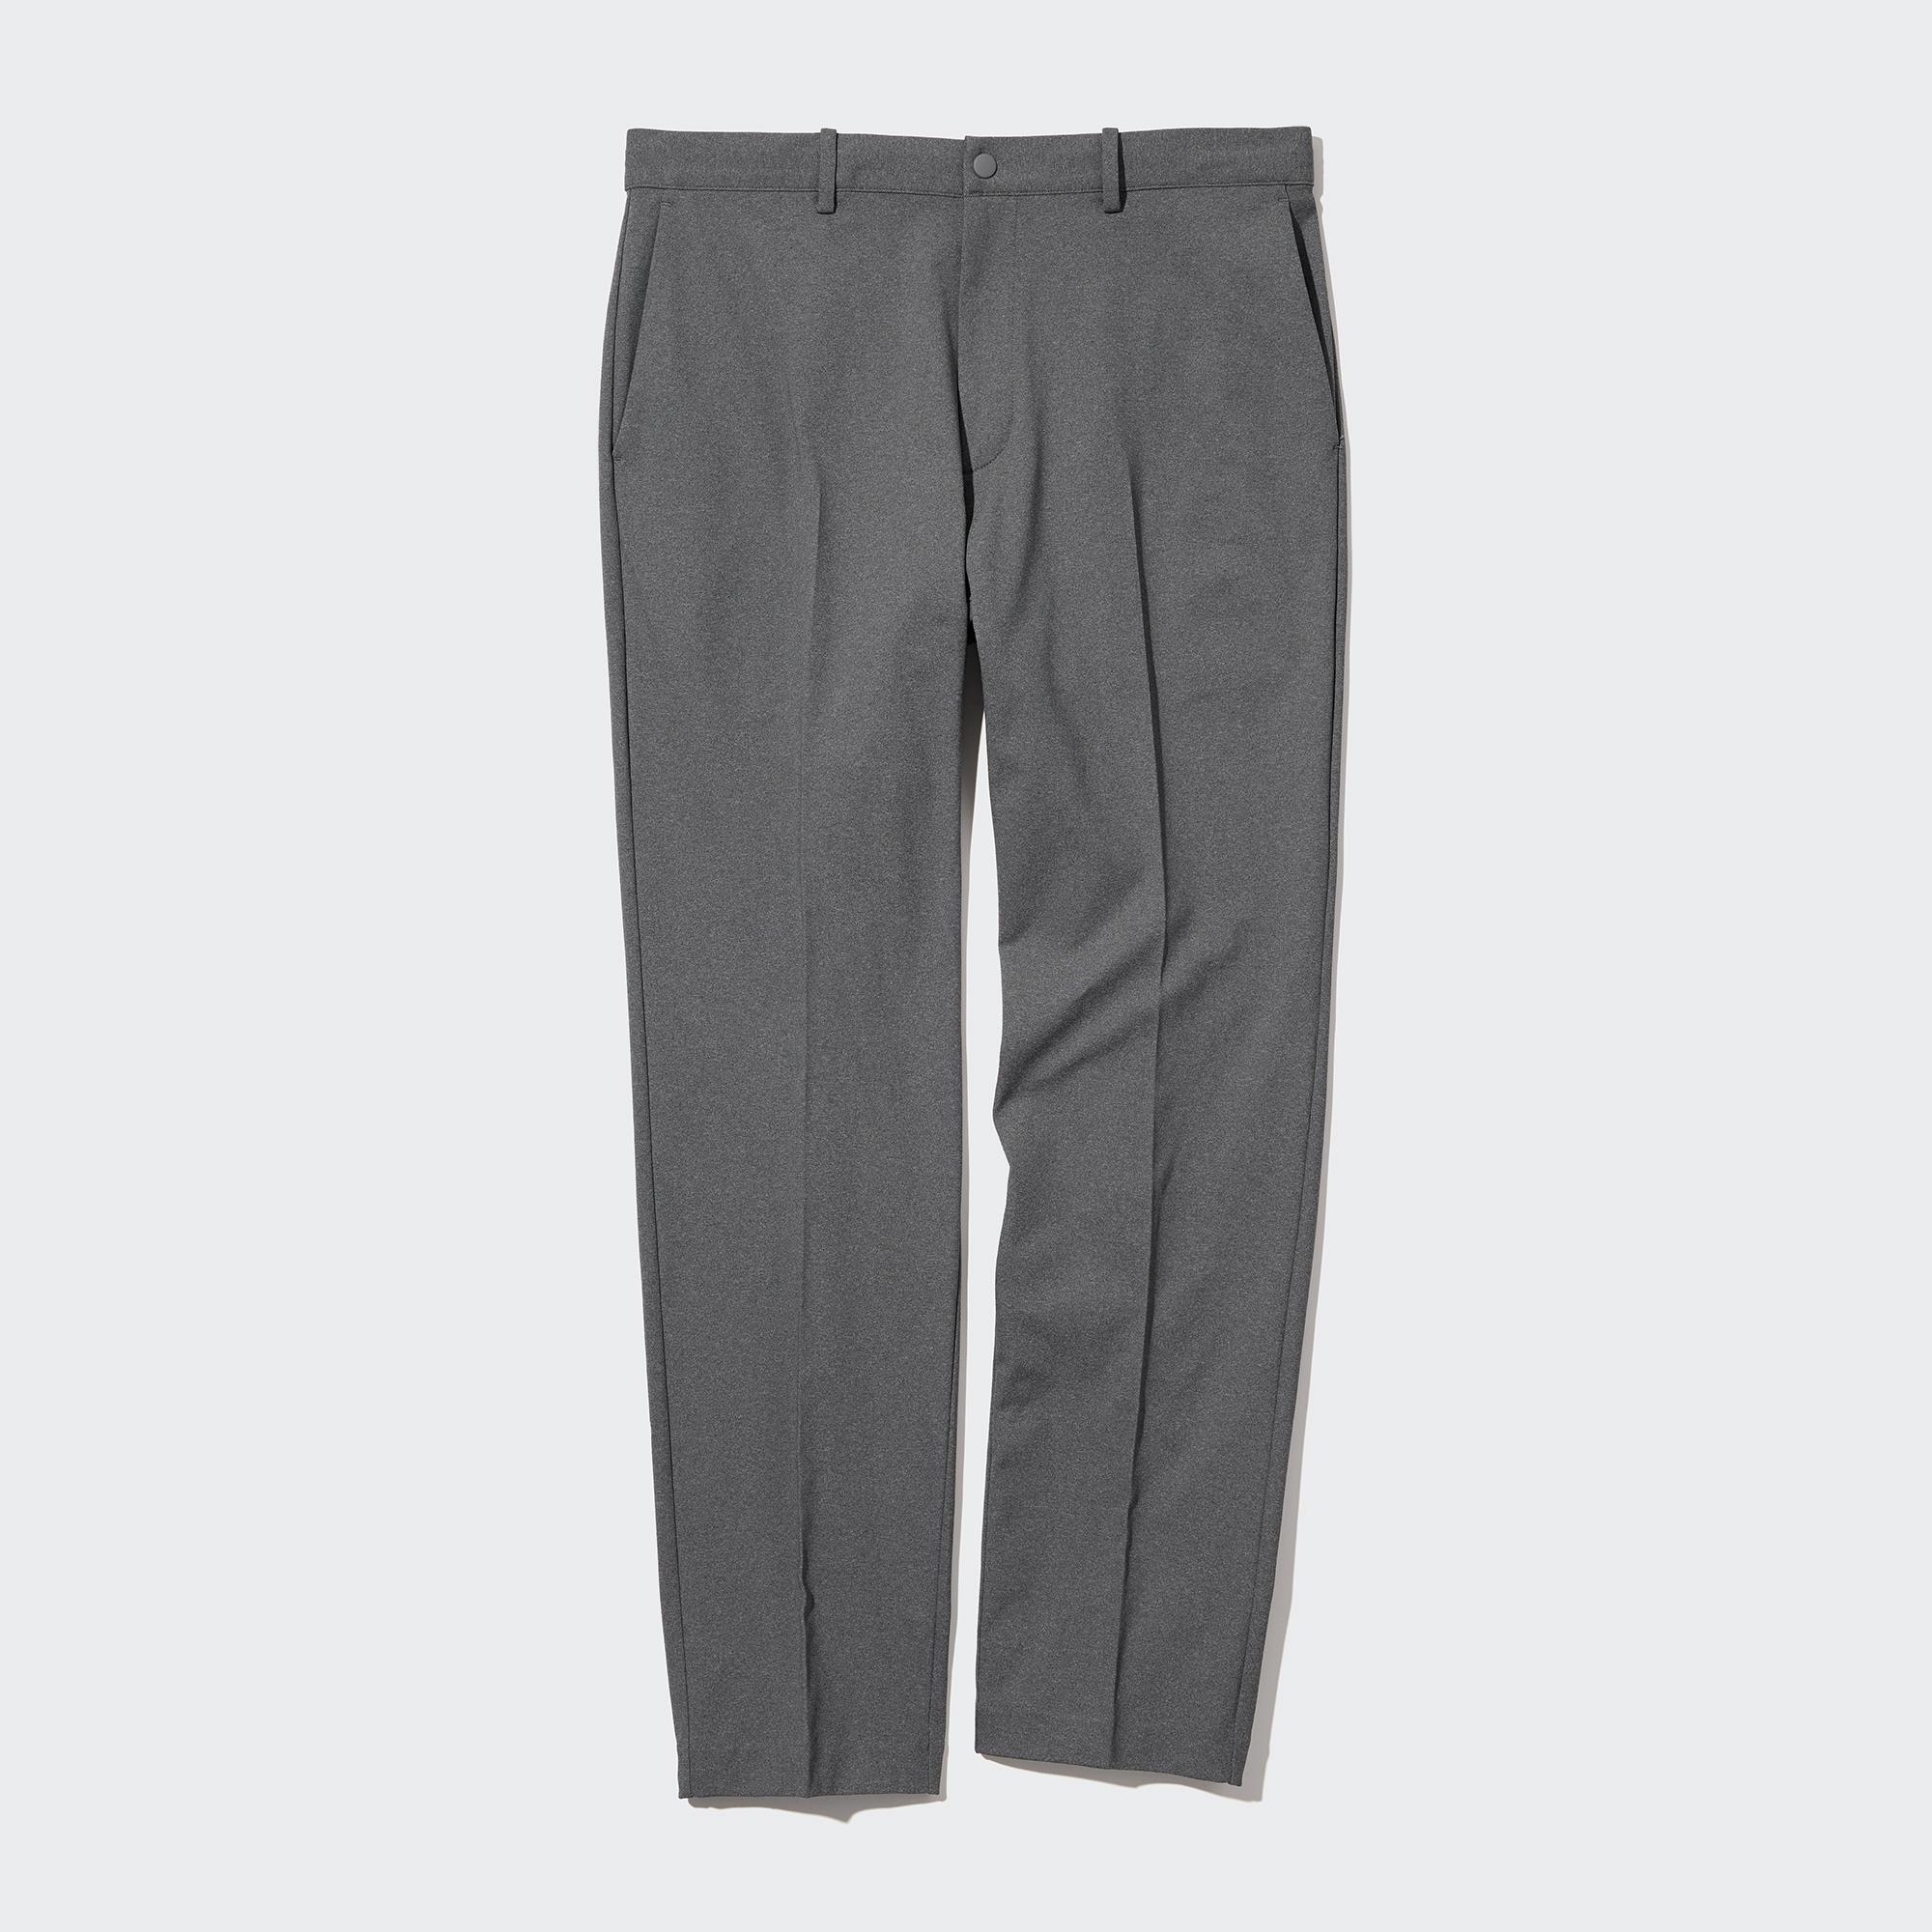 Ультра-эластичные брюки smart (длинные) UNIQLO, серый джоггеры длинные uniqlo серый